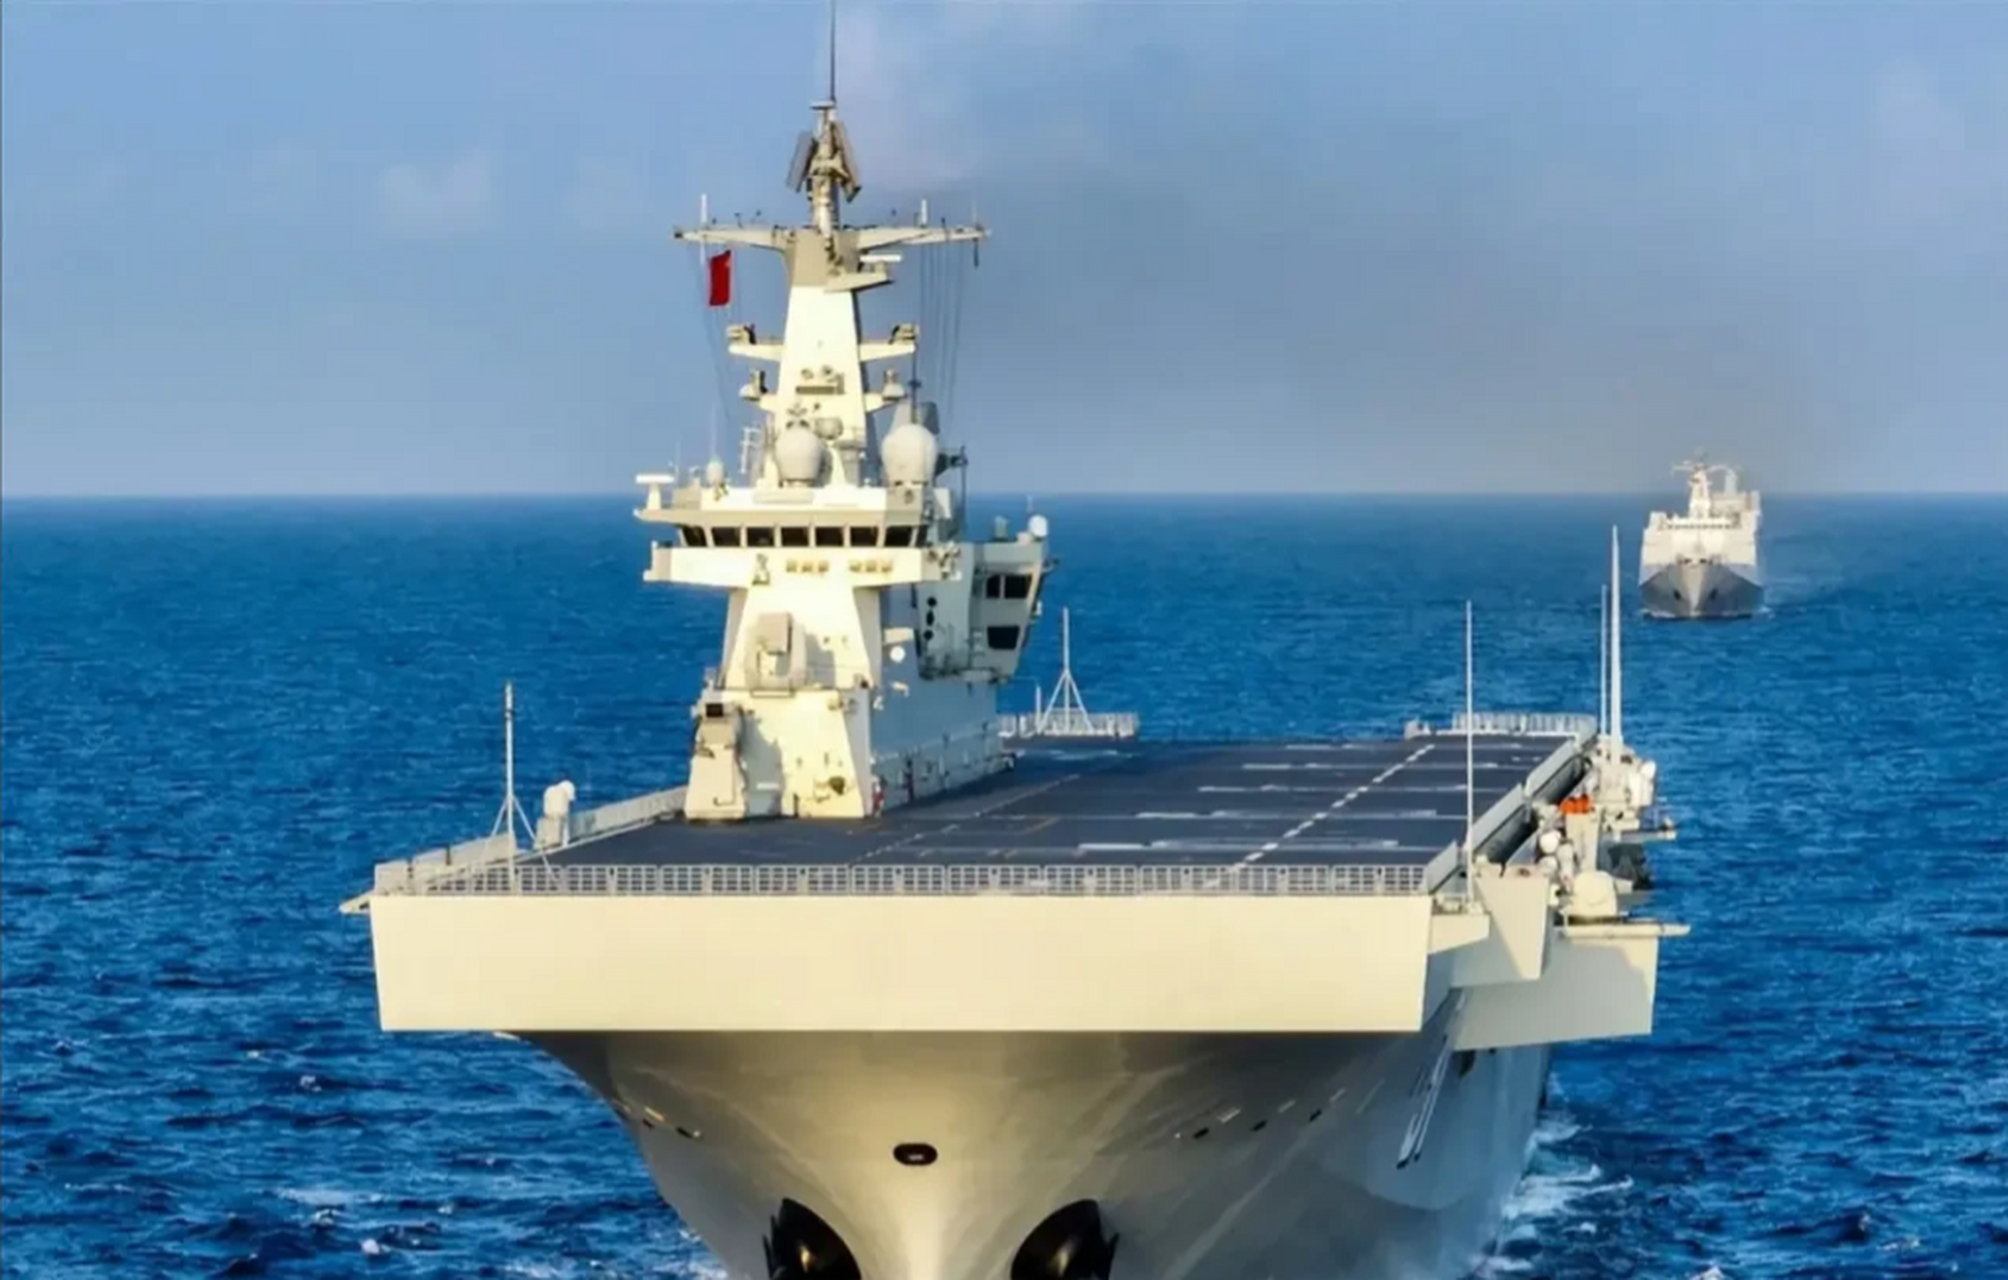 中国已有三艘075型两栖攻击舰,也称直升机航母,并且已服役!